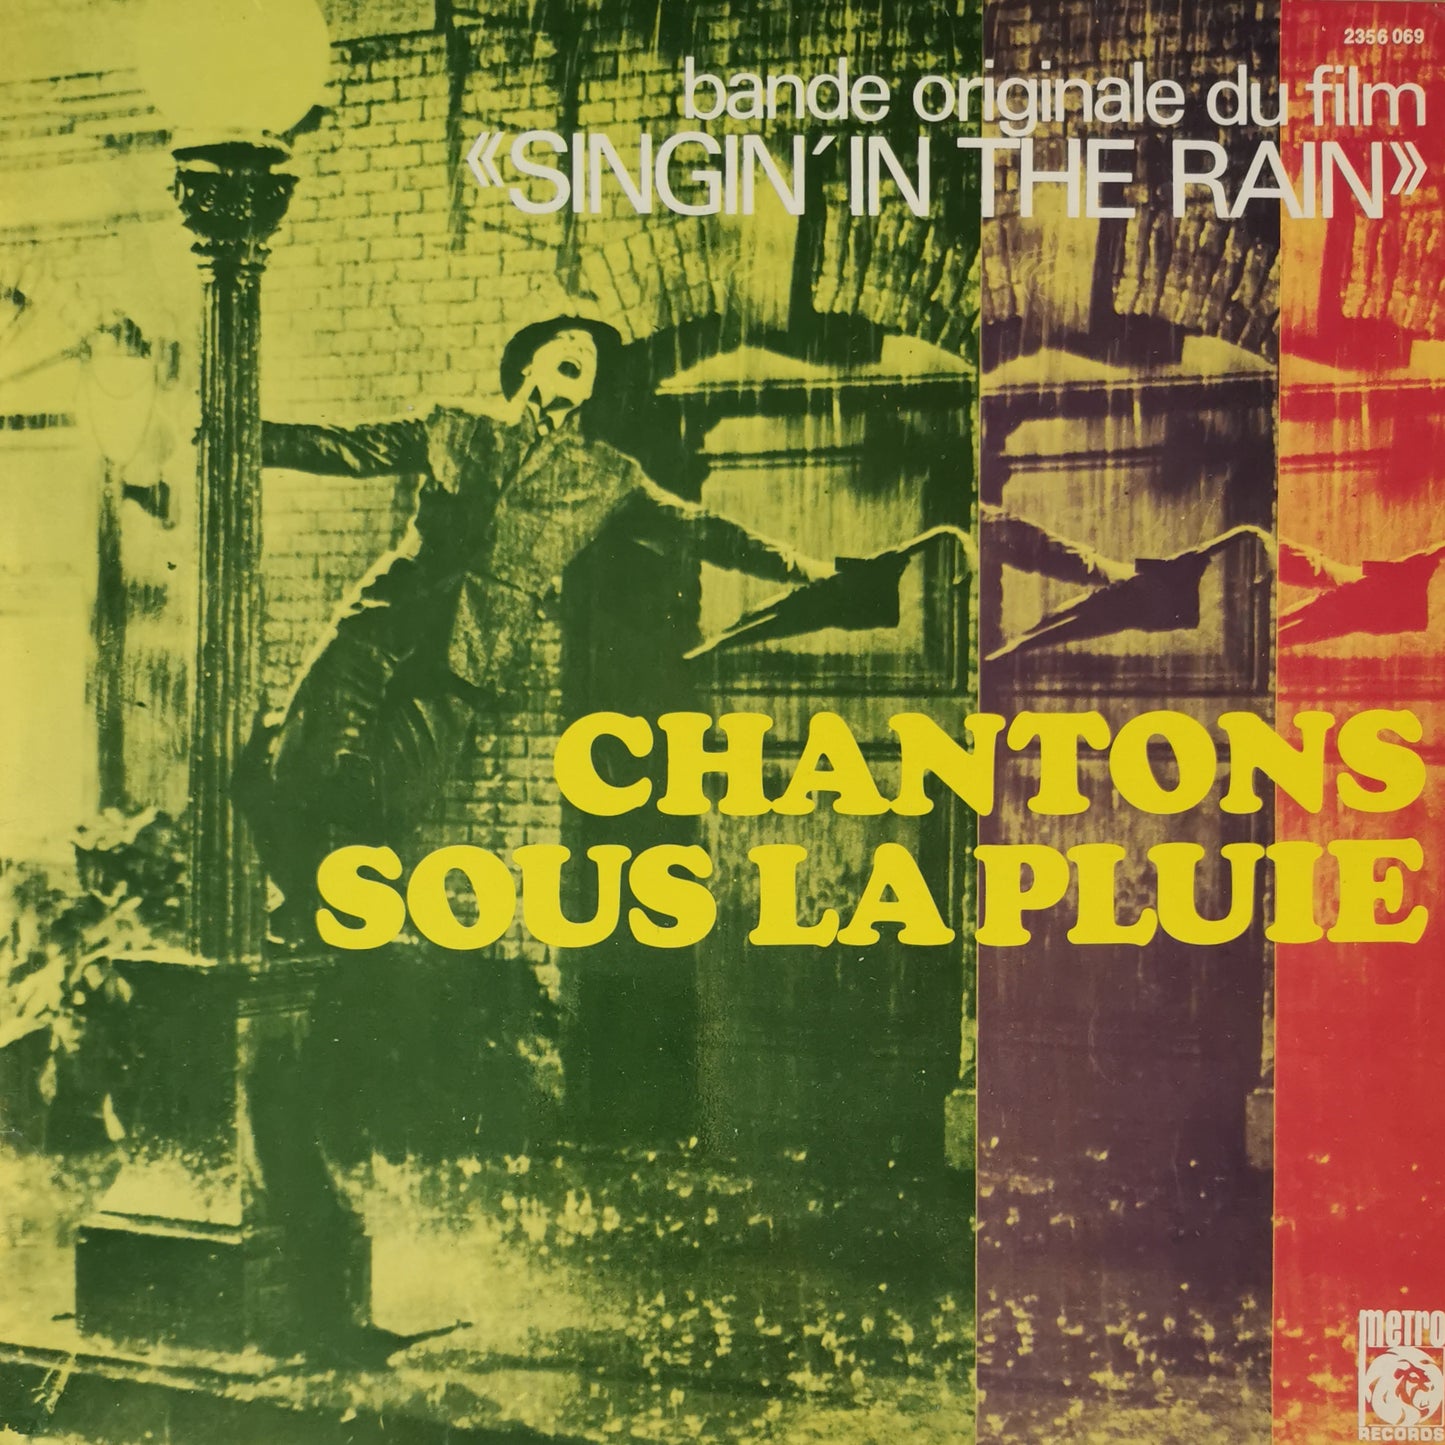 CHANTONS SOUS LA PLUIE - Bande originale du film